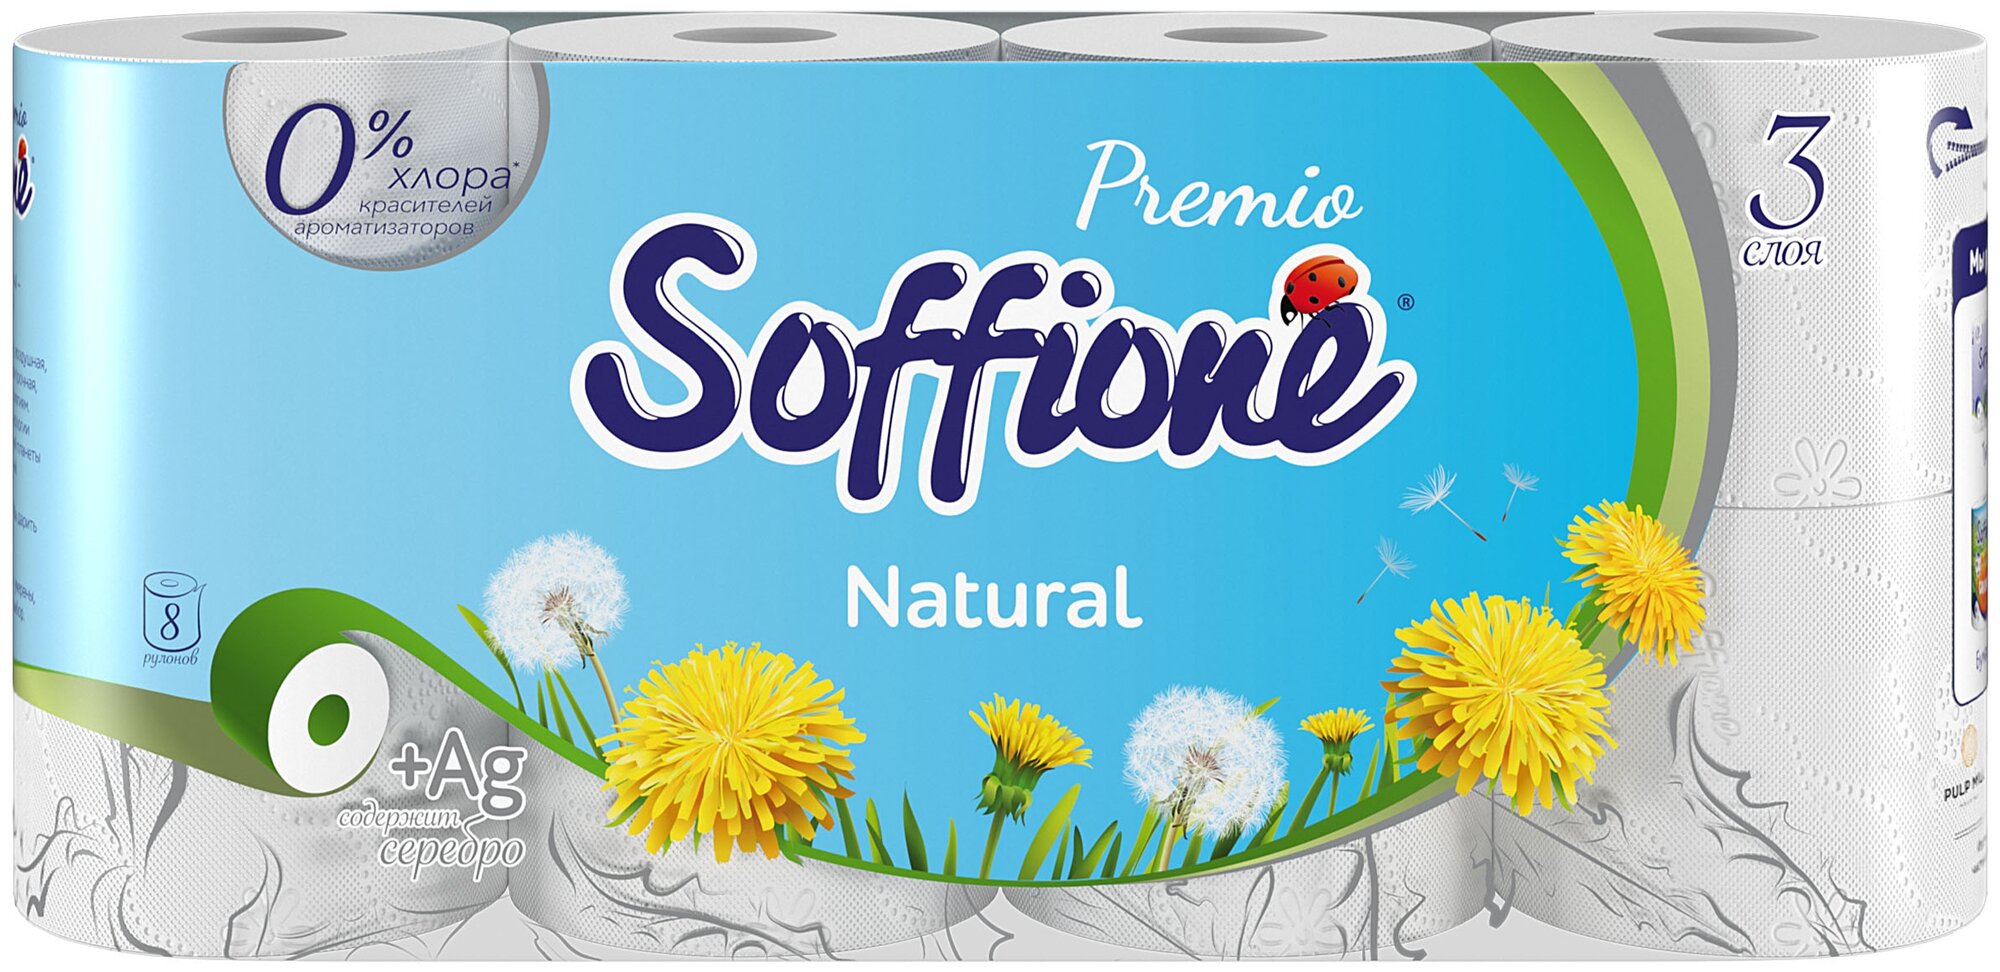 Туалетная бумага Soffione Premio Natural трехслойная белая 8 рул.